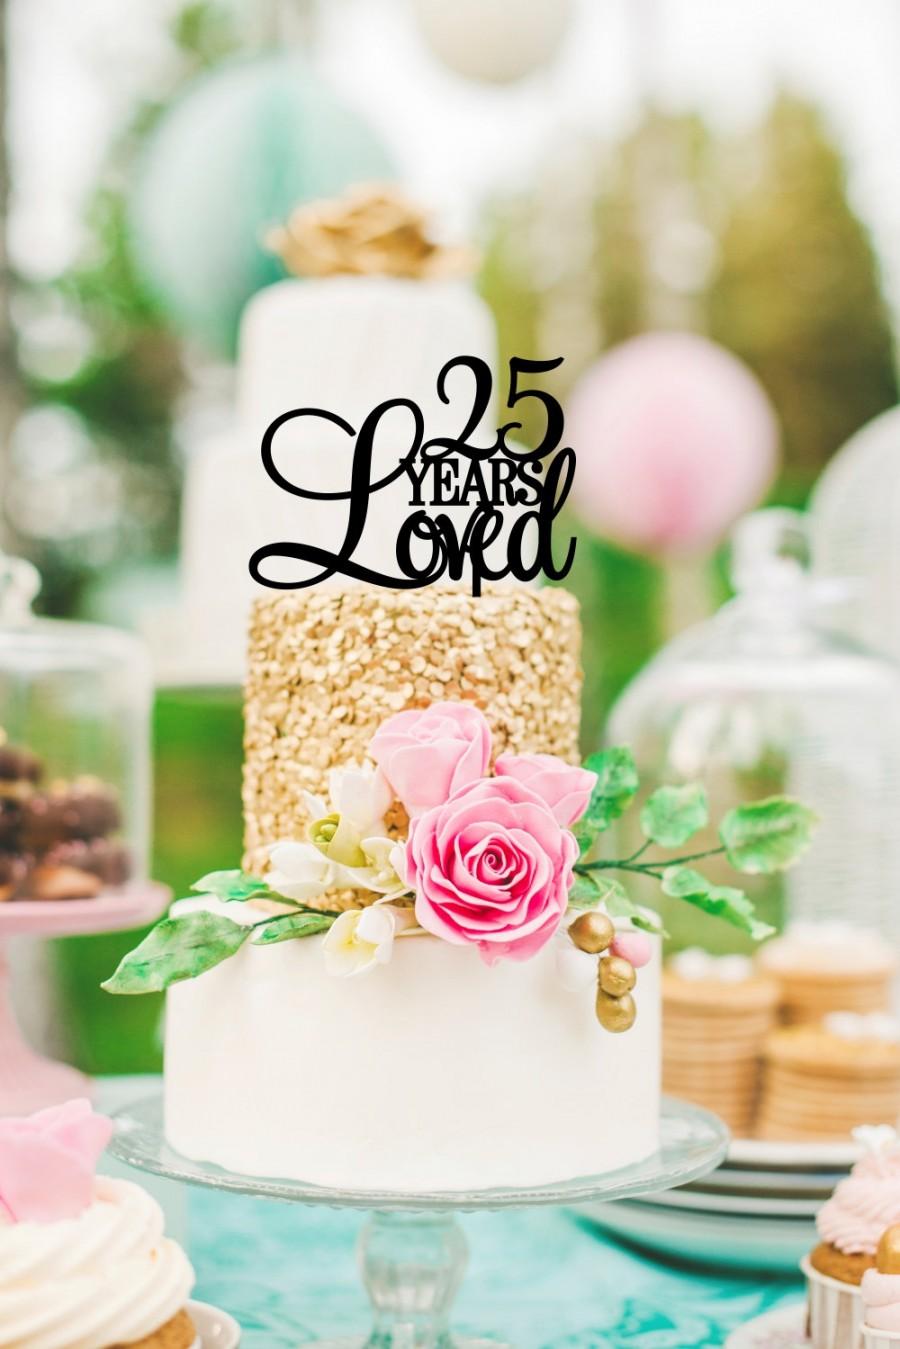 Wedding - Custom 25 Years Loved Cake Topper - Birthday Cake Topper or 25th Anniversary Cake Topper